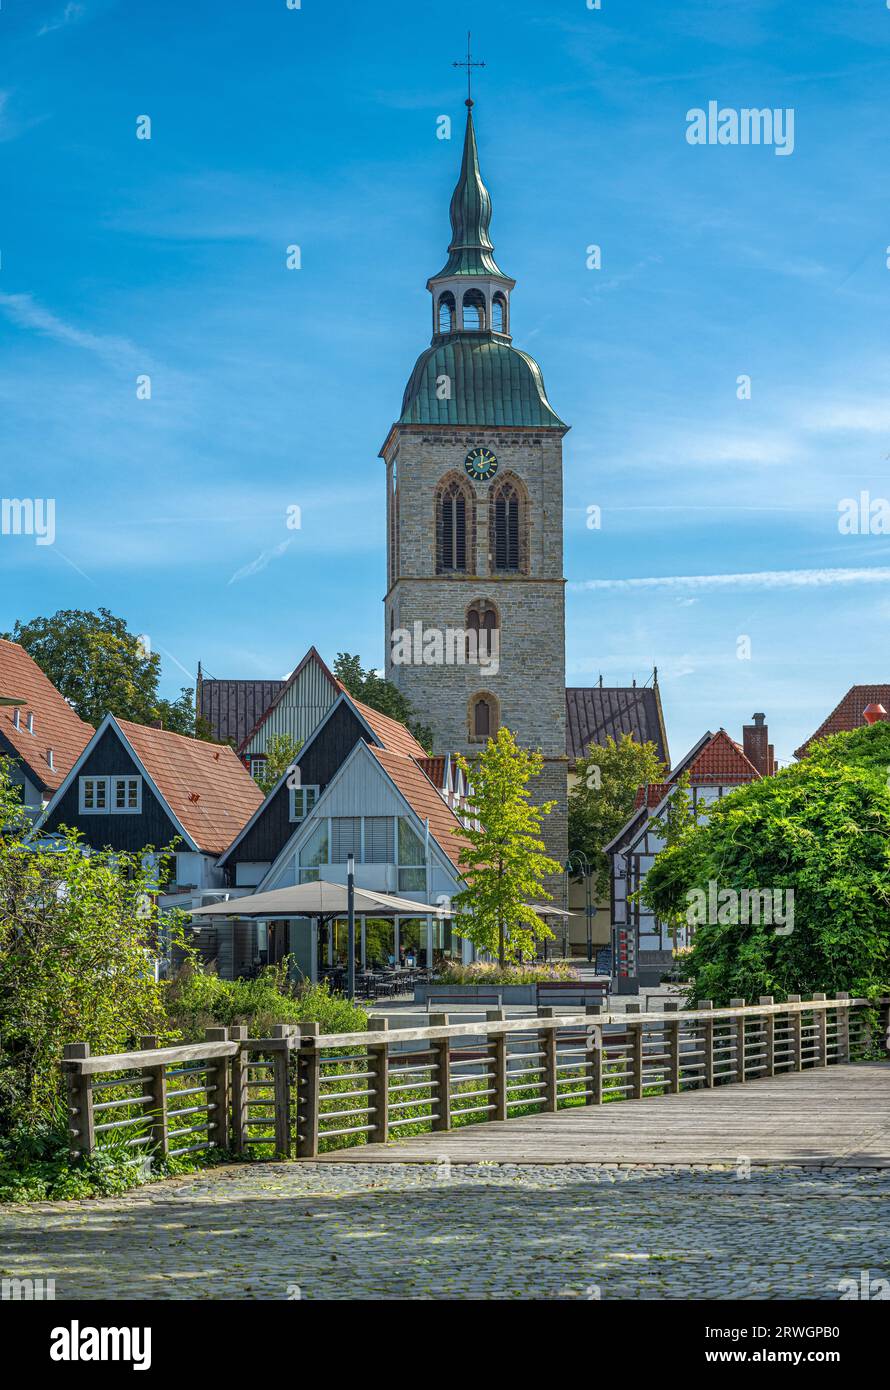 Altstadt von Wiedenbrück mit der Kirche St. Aegidius, Rheda-Wiedenbrück, Ostwestfalen-Lippe, Nordrhein-Westfalen, Deutschland Stockfoto